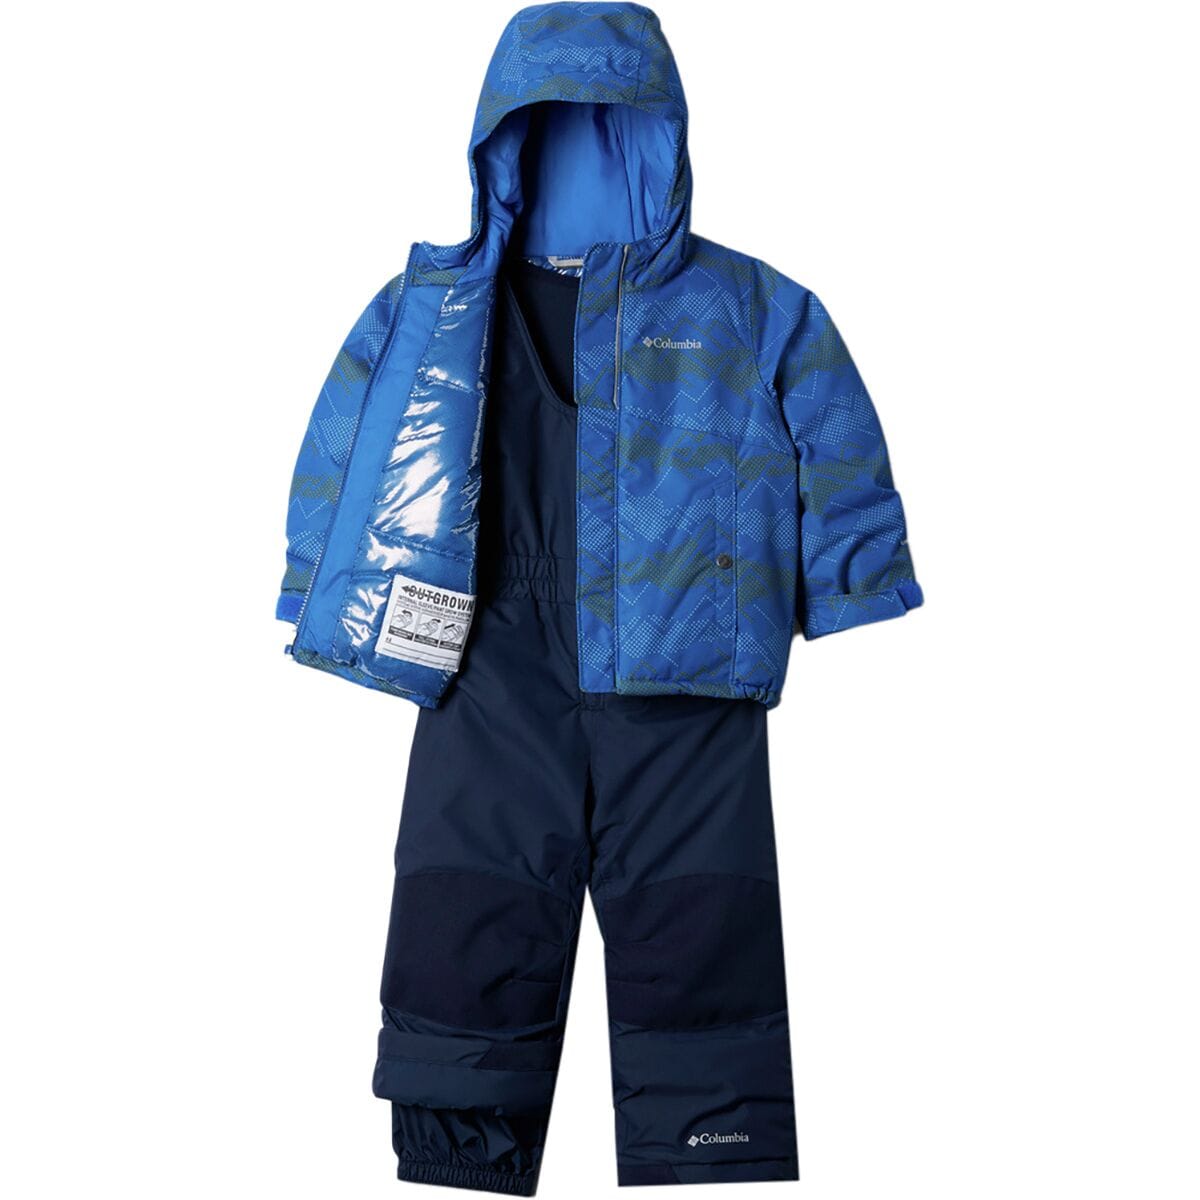 toddler boy columbia rain jacket